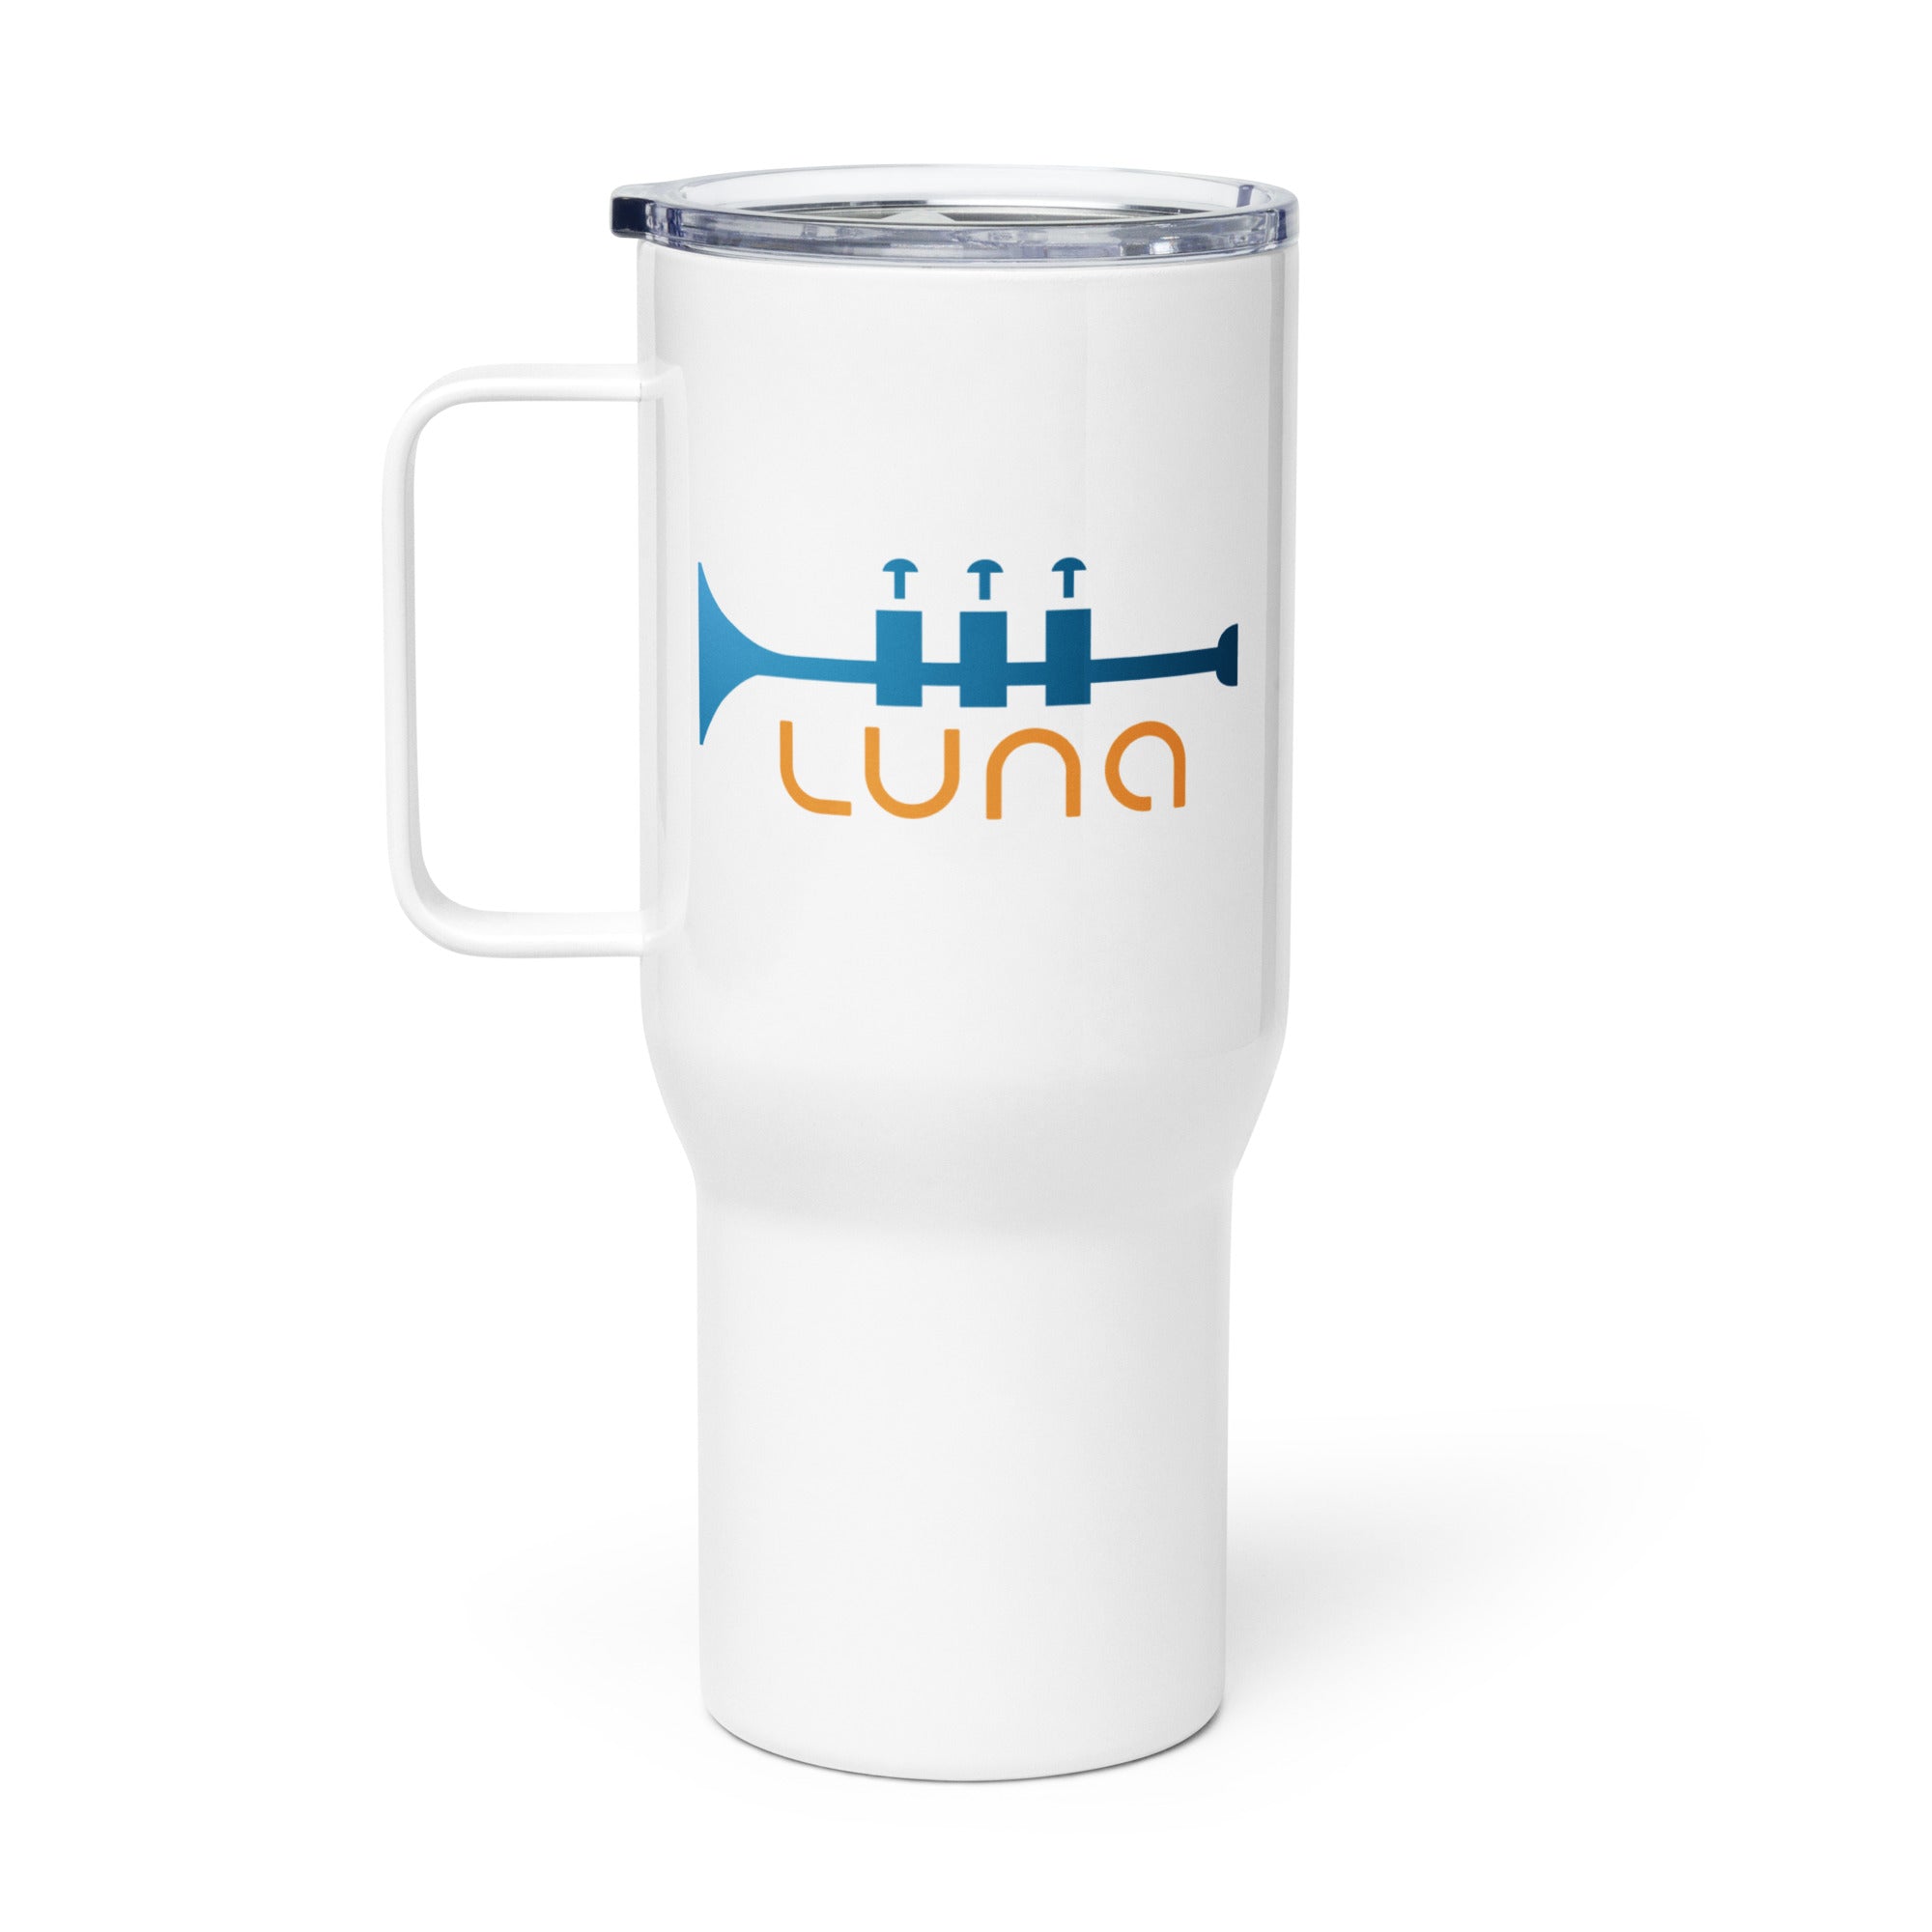 Luna: Travel Mug